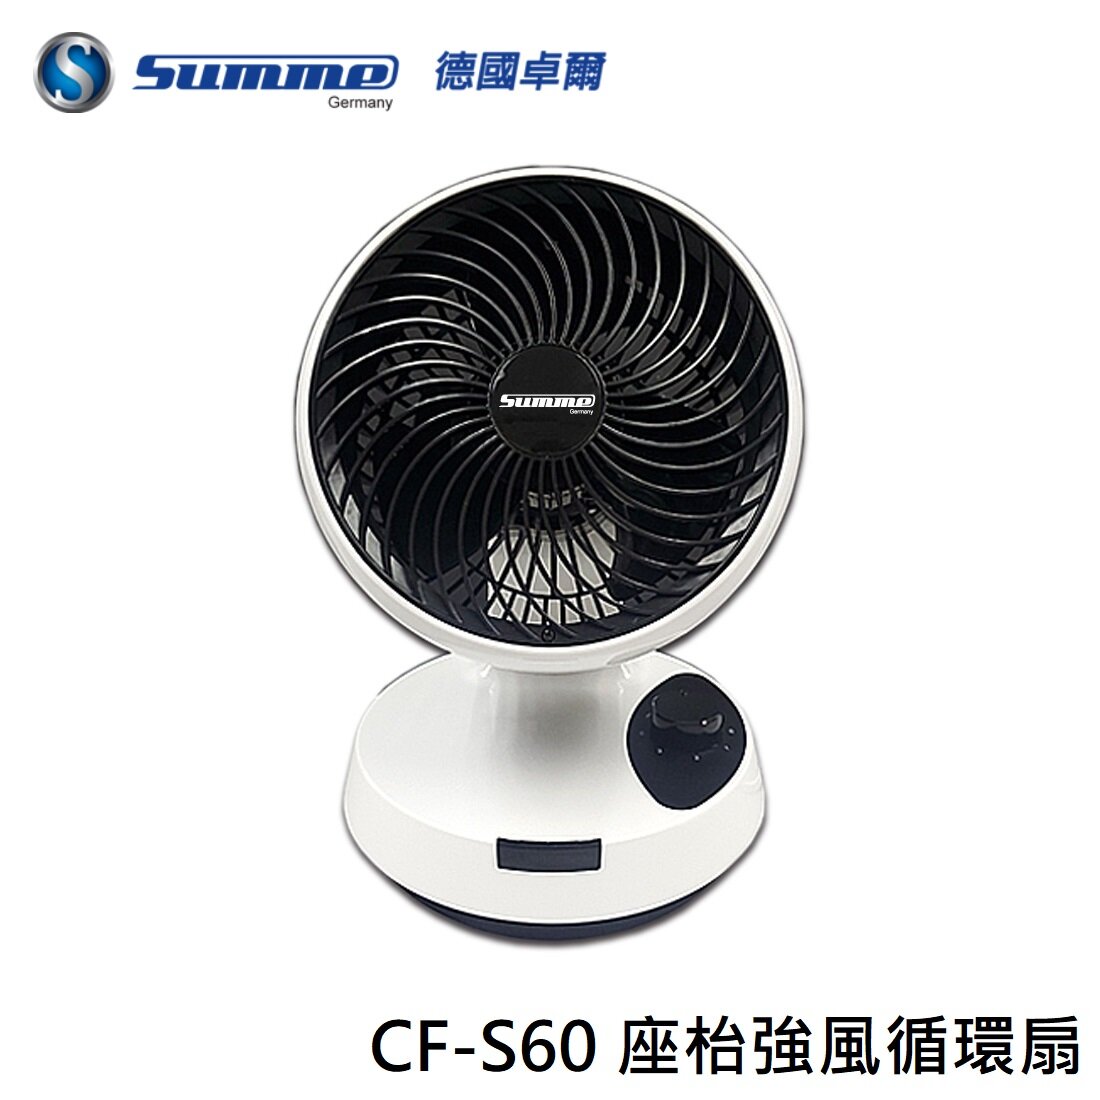 Germany Zall - Summe CF-S60 strong air circulation fan | convection fan | circulation fan